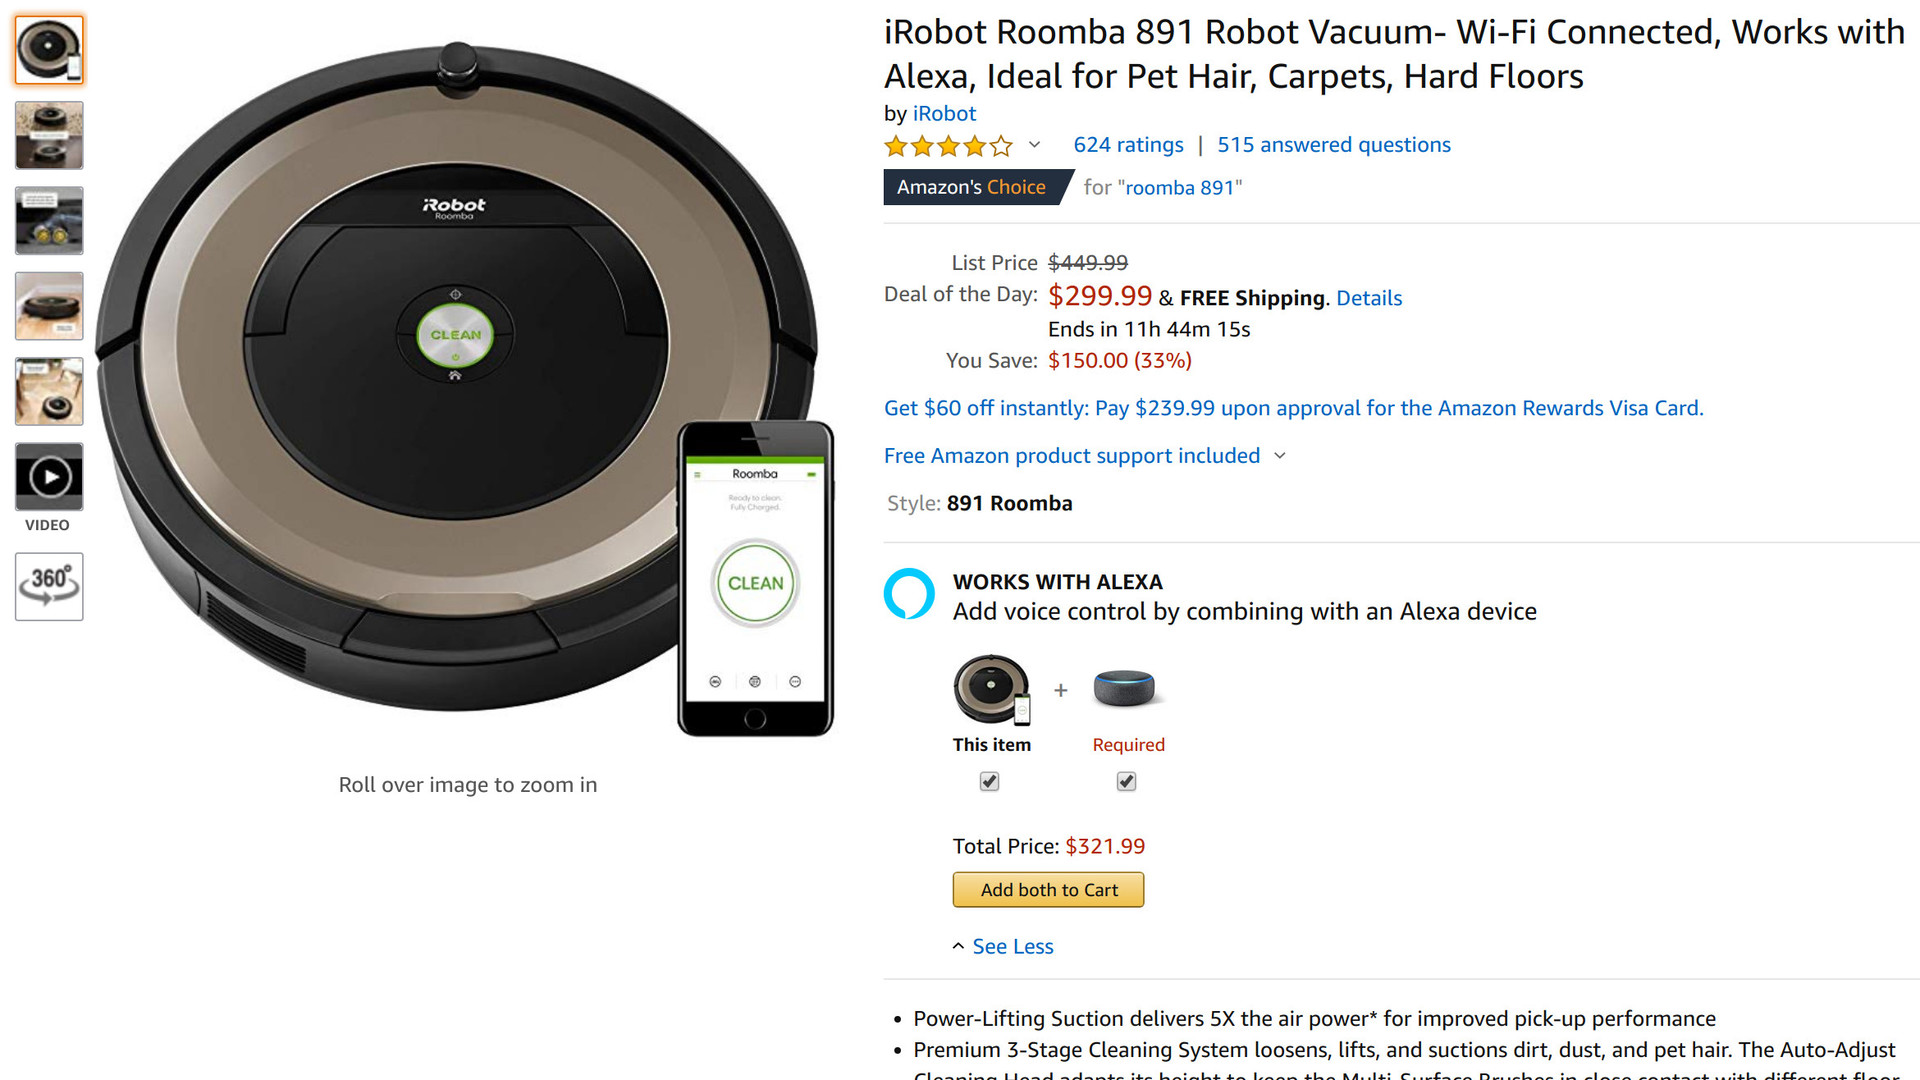 iRobot Roomba 891 Amazon sale